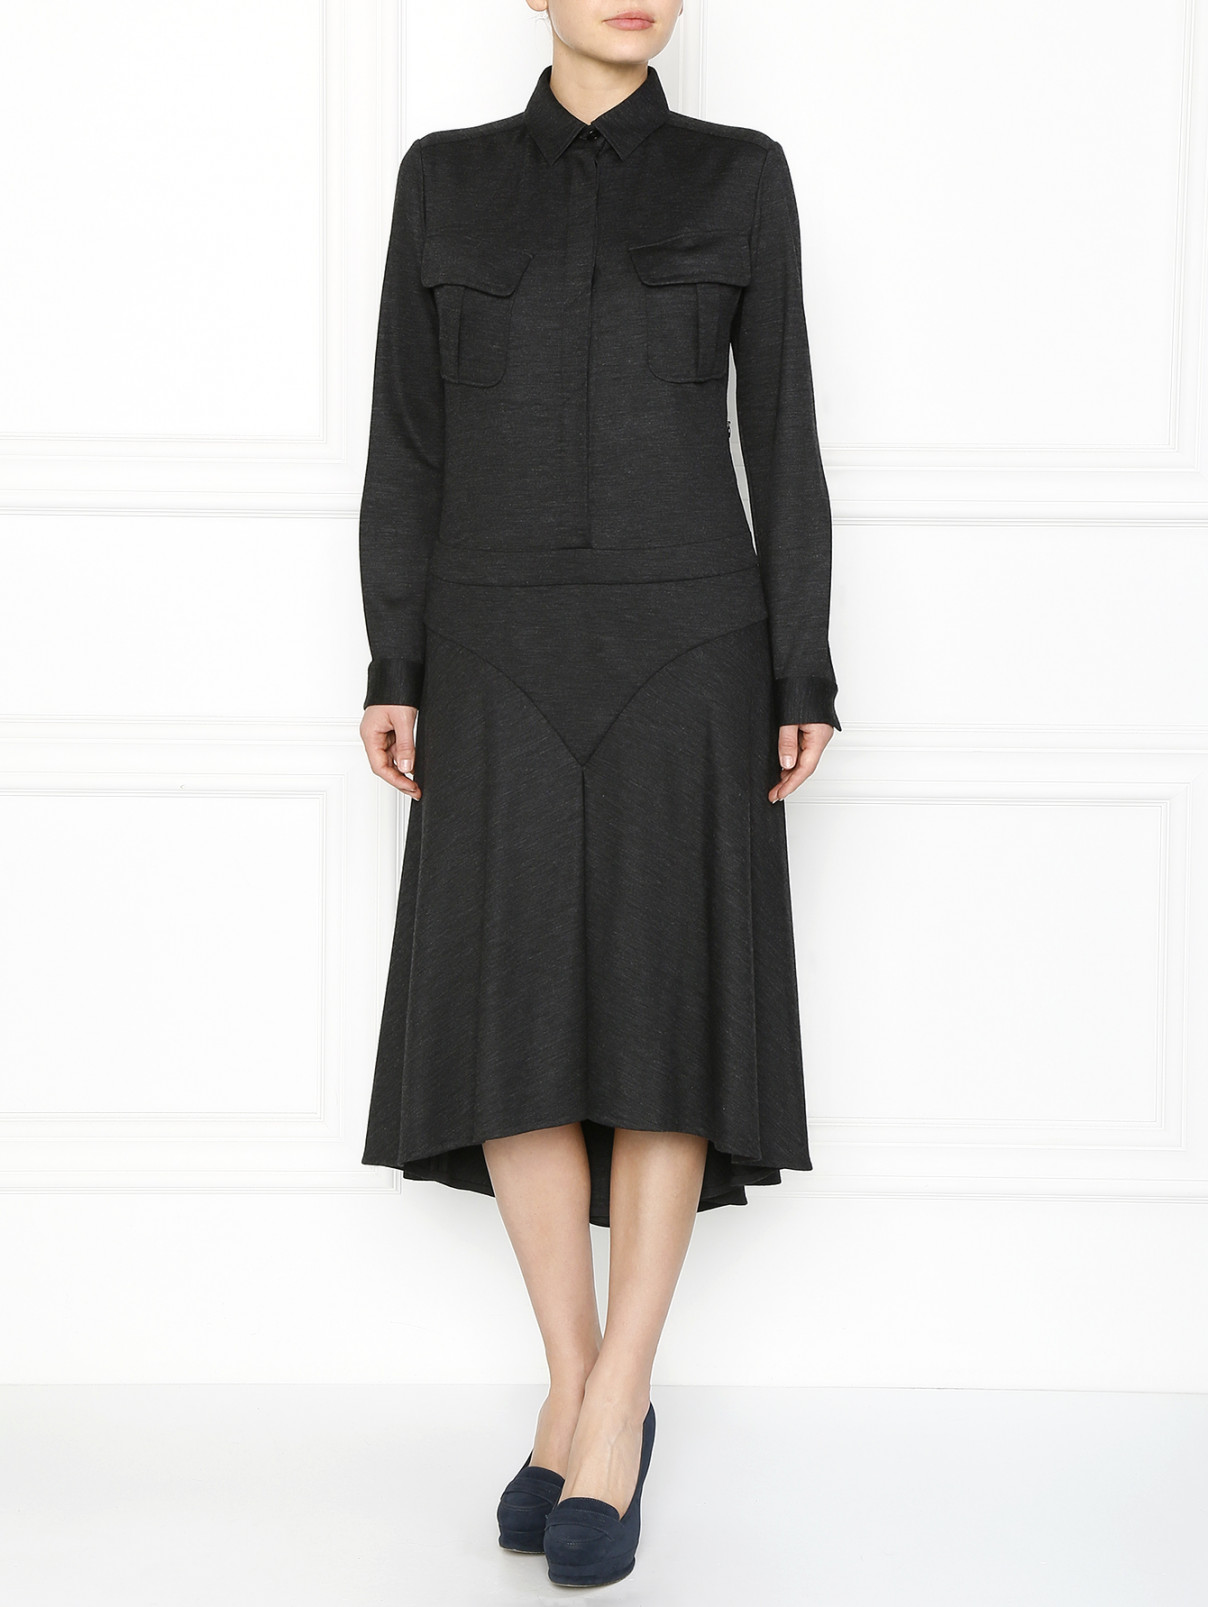 Платье-миди с накладными карманами Barbara Bui  –  Модель Общий вид  – Цвет:  Серый